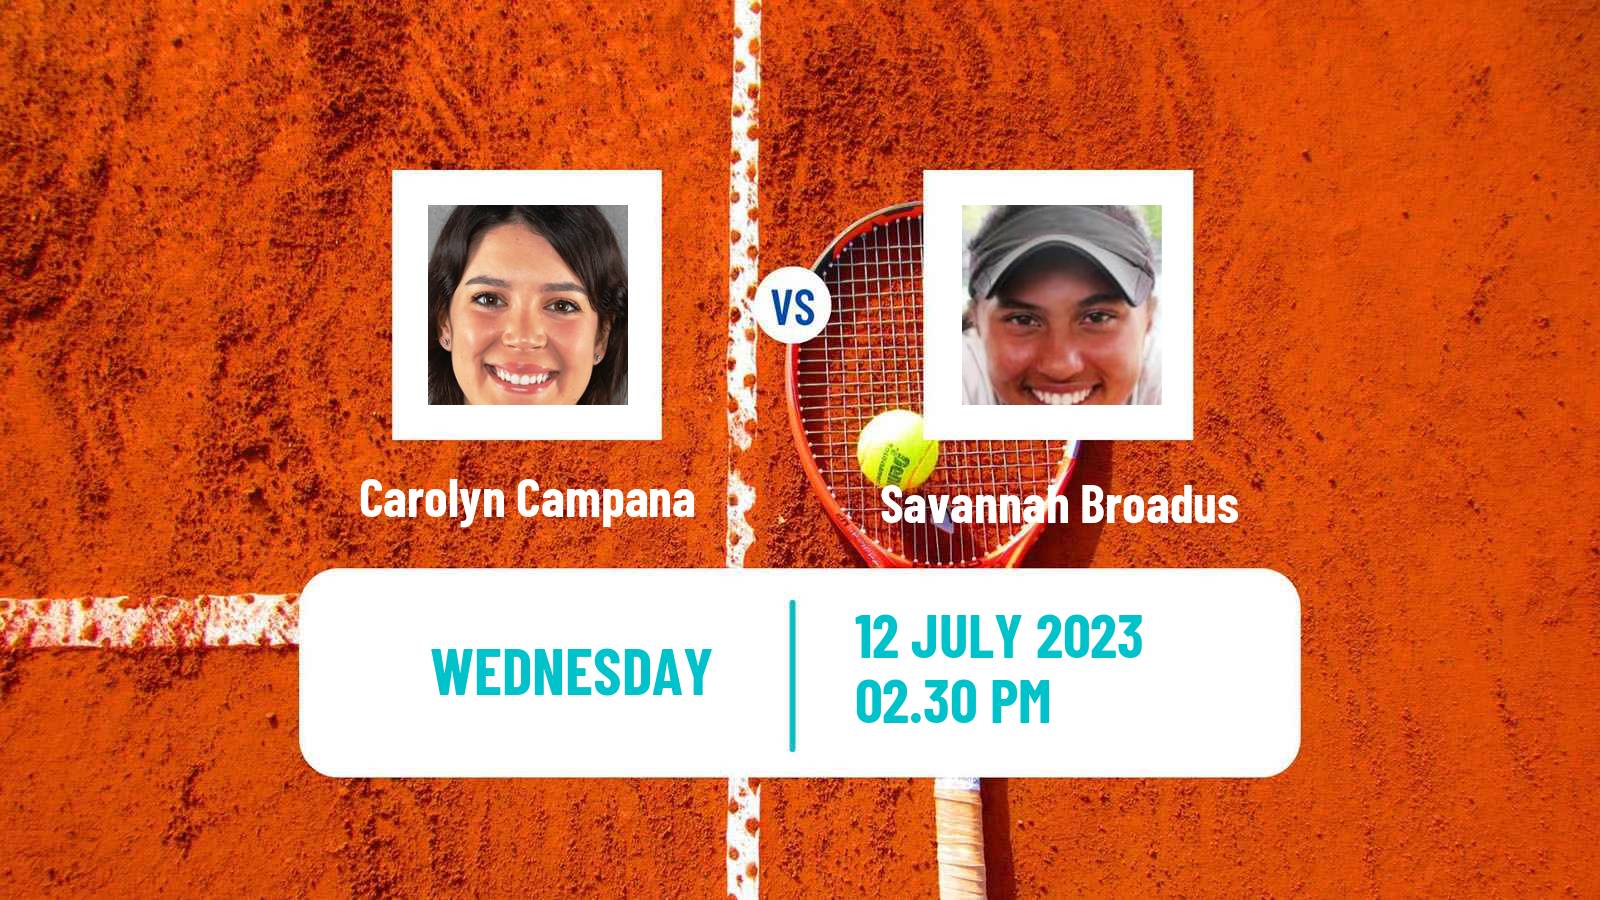 Tennis ITF W15 Lakewood Ca 2 Women Carolyn Campana - Savannah Broadus